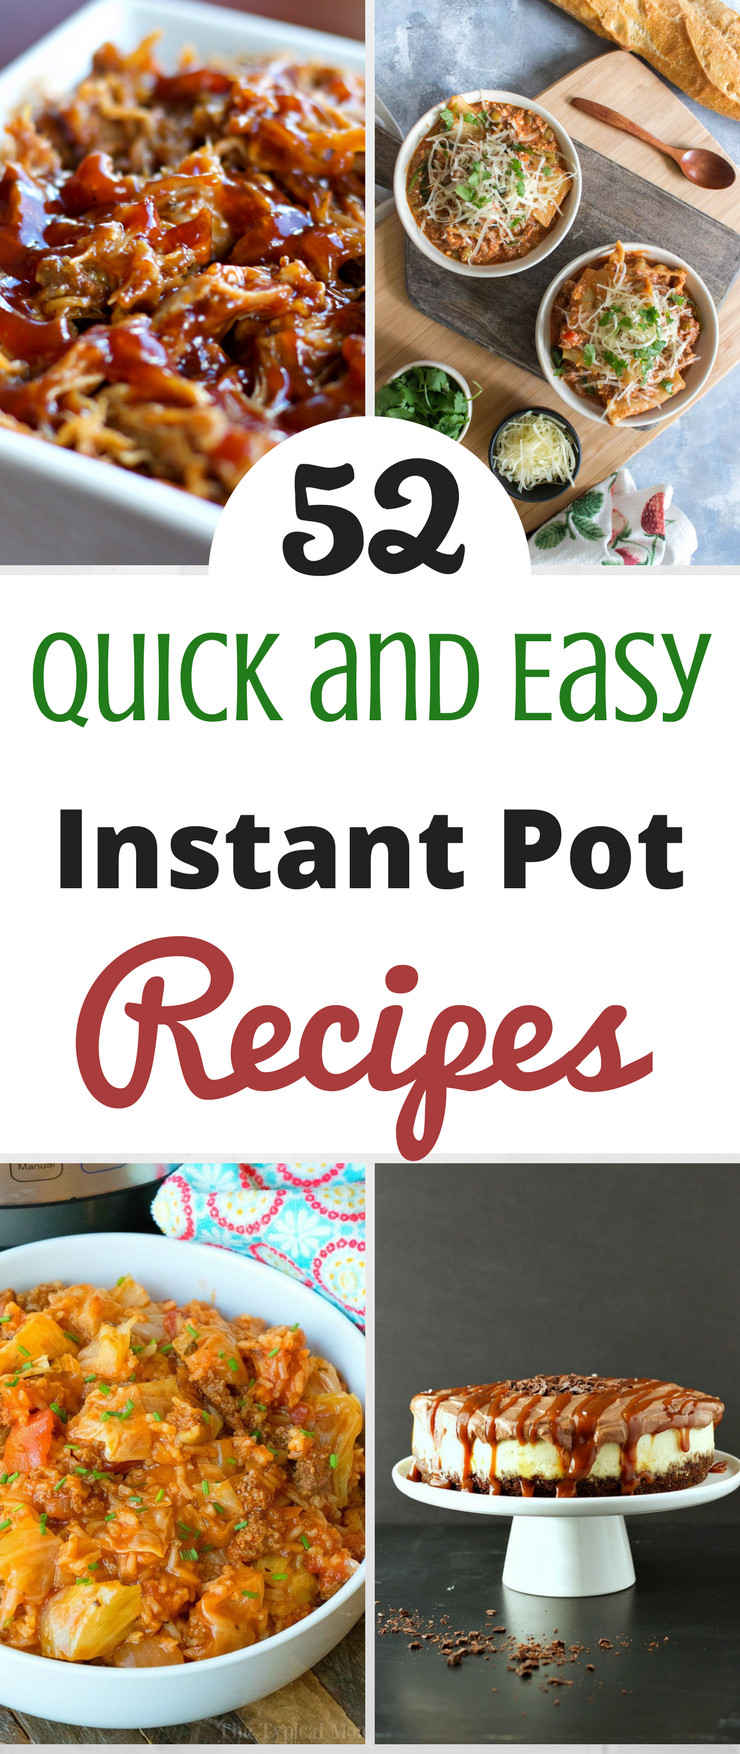 Instant Pot Simple Recipes
 52 Quick and Easy Instant Pot Recipes SlickHousewives